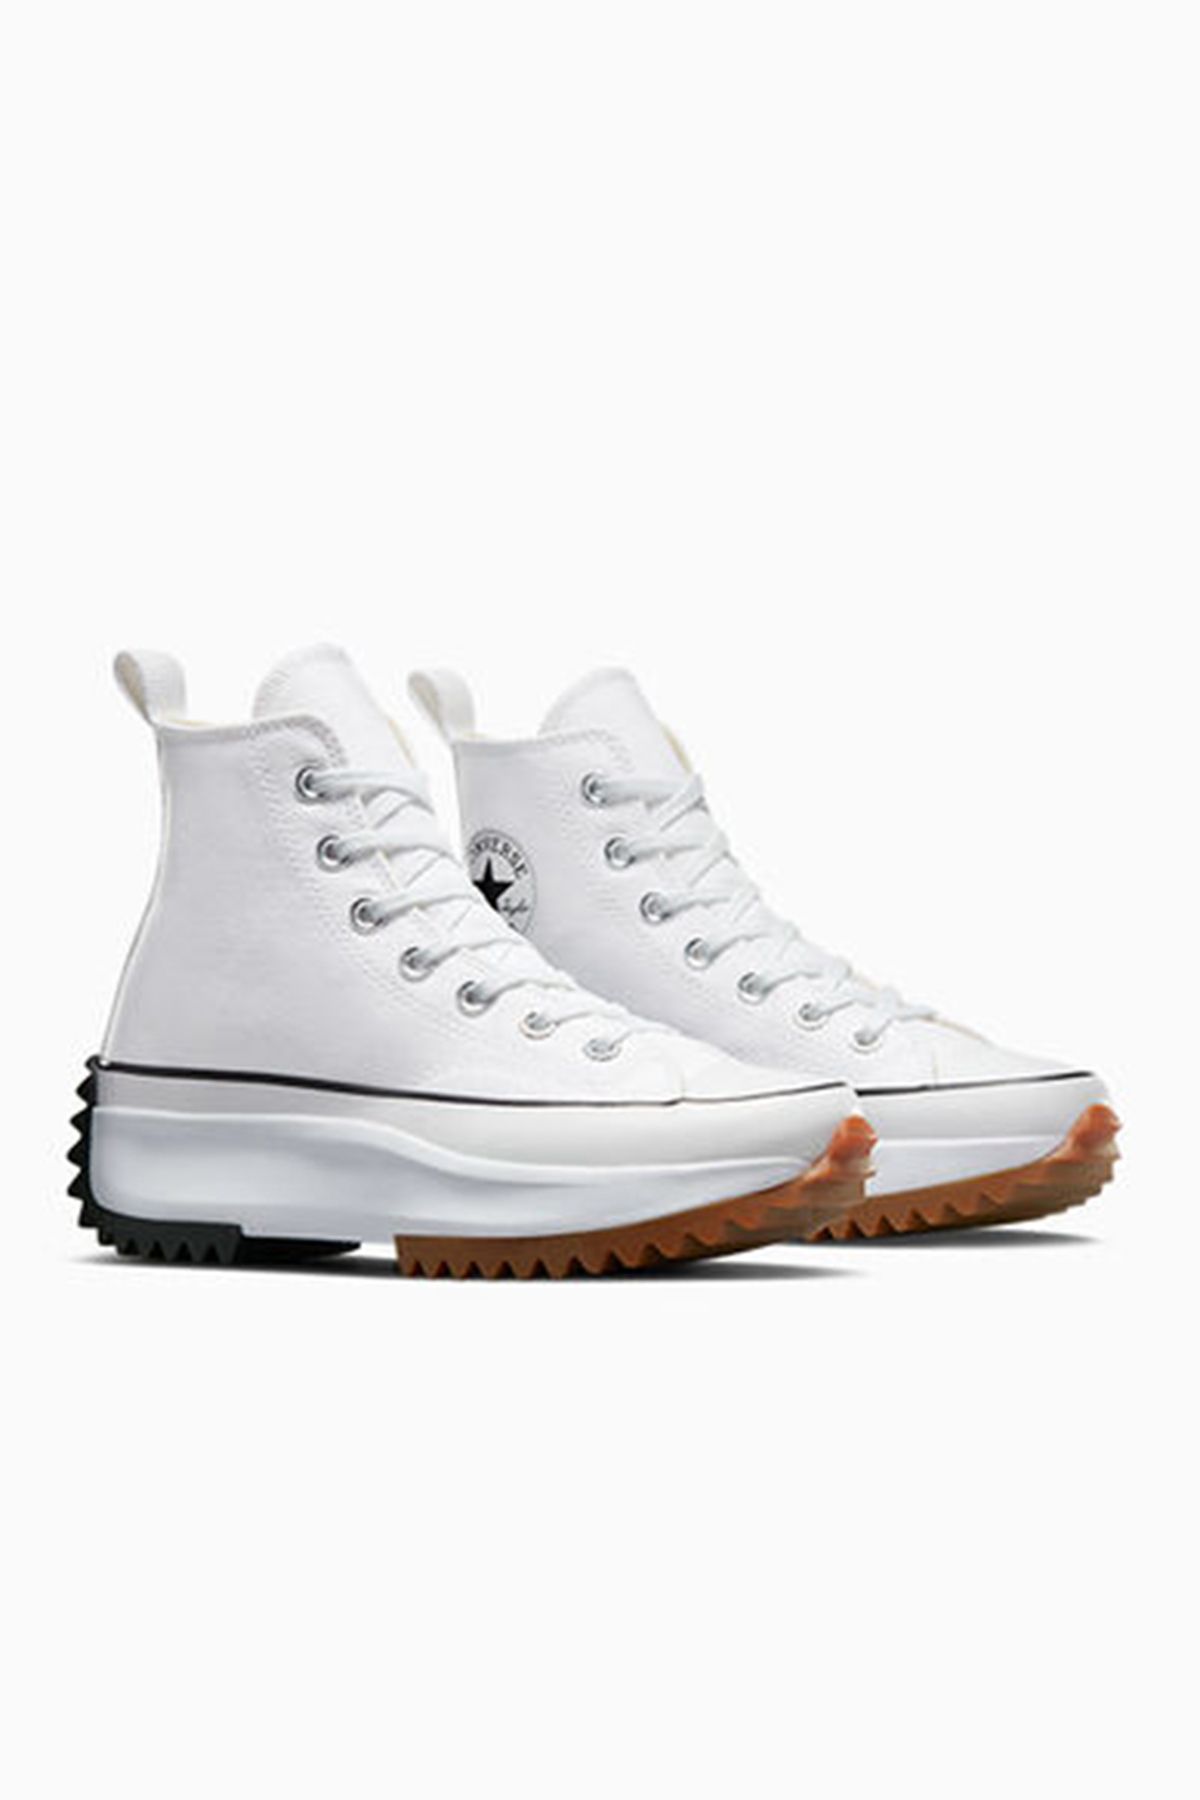 Converse Kadın Sneaker 166799c Run Star Hıke Canvas Platform Beyaz/sıyah Kanvas